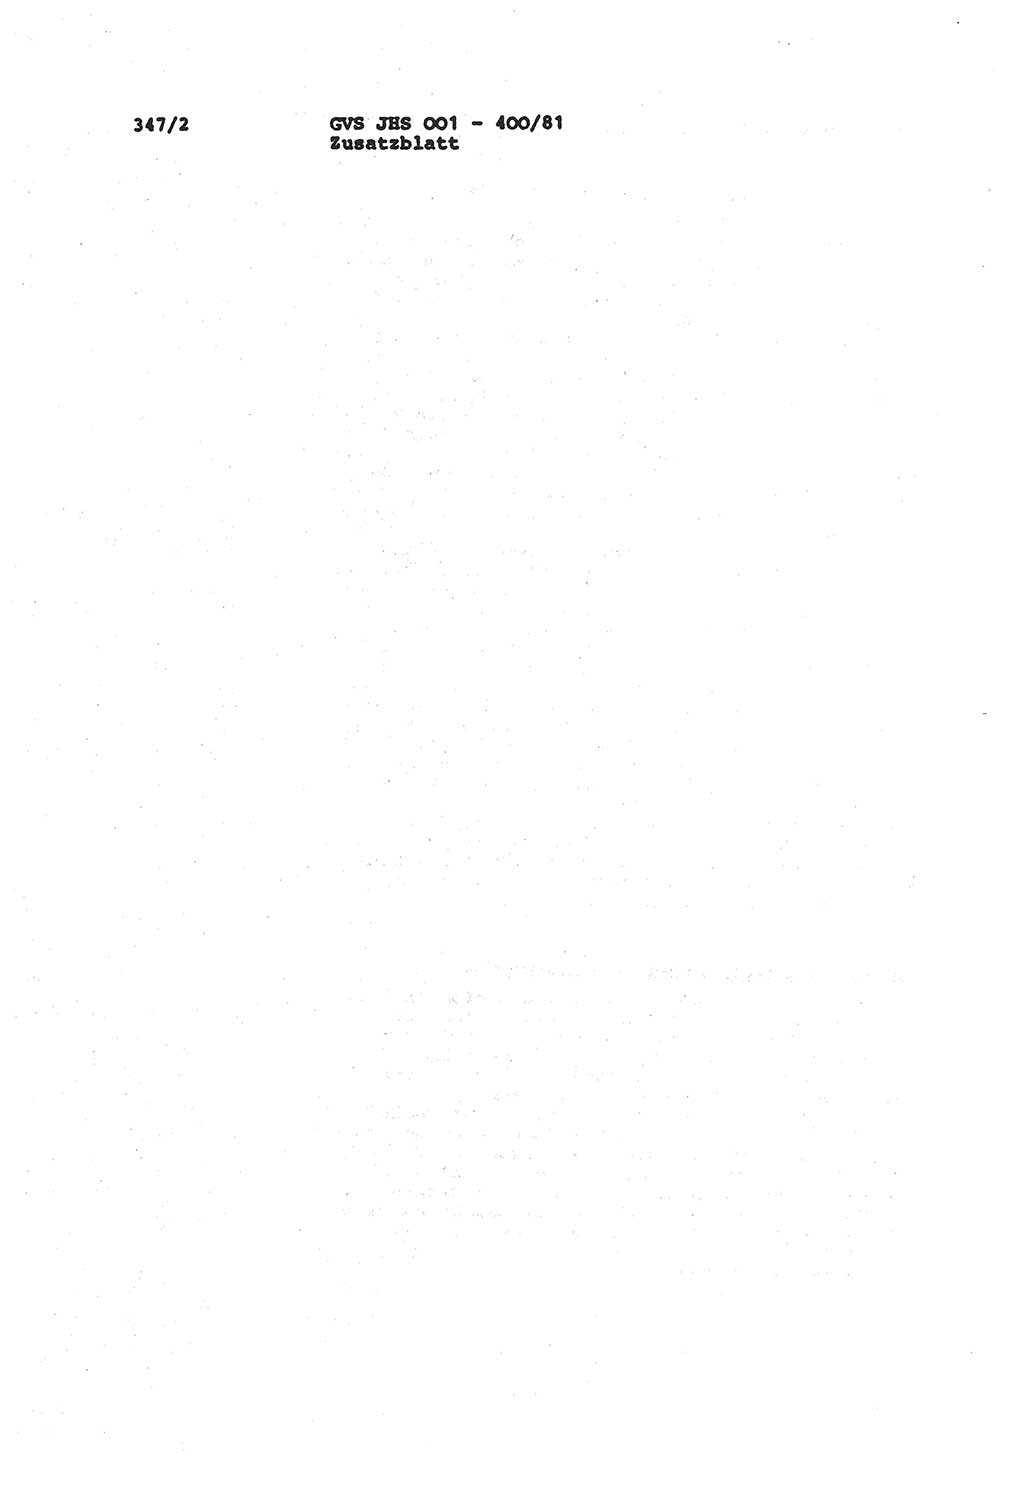 Wörterbuch der politisch-operativen Arbeit, Ministerium für Staatssicherheit (MfS) [Deutsche Demokratische Republik (DDR)], Juristische Hochschule (JHS), Geheime Verschlußsache (GVS) o001-400/81, Potsdam 1985, Blatt 347/2 (Wb. pol.-op. Arb. MfS DDR JHS GVS o001-400/81 1985, Bl. 347/2)